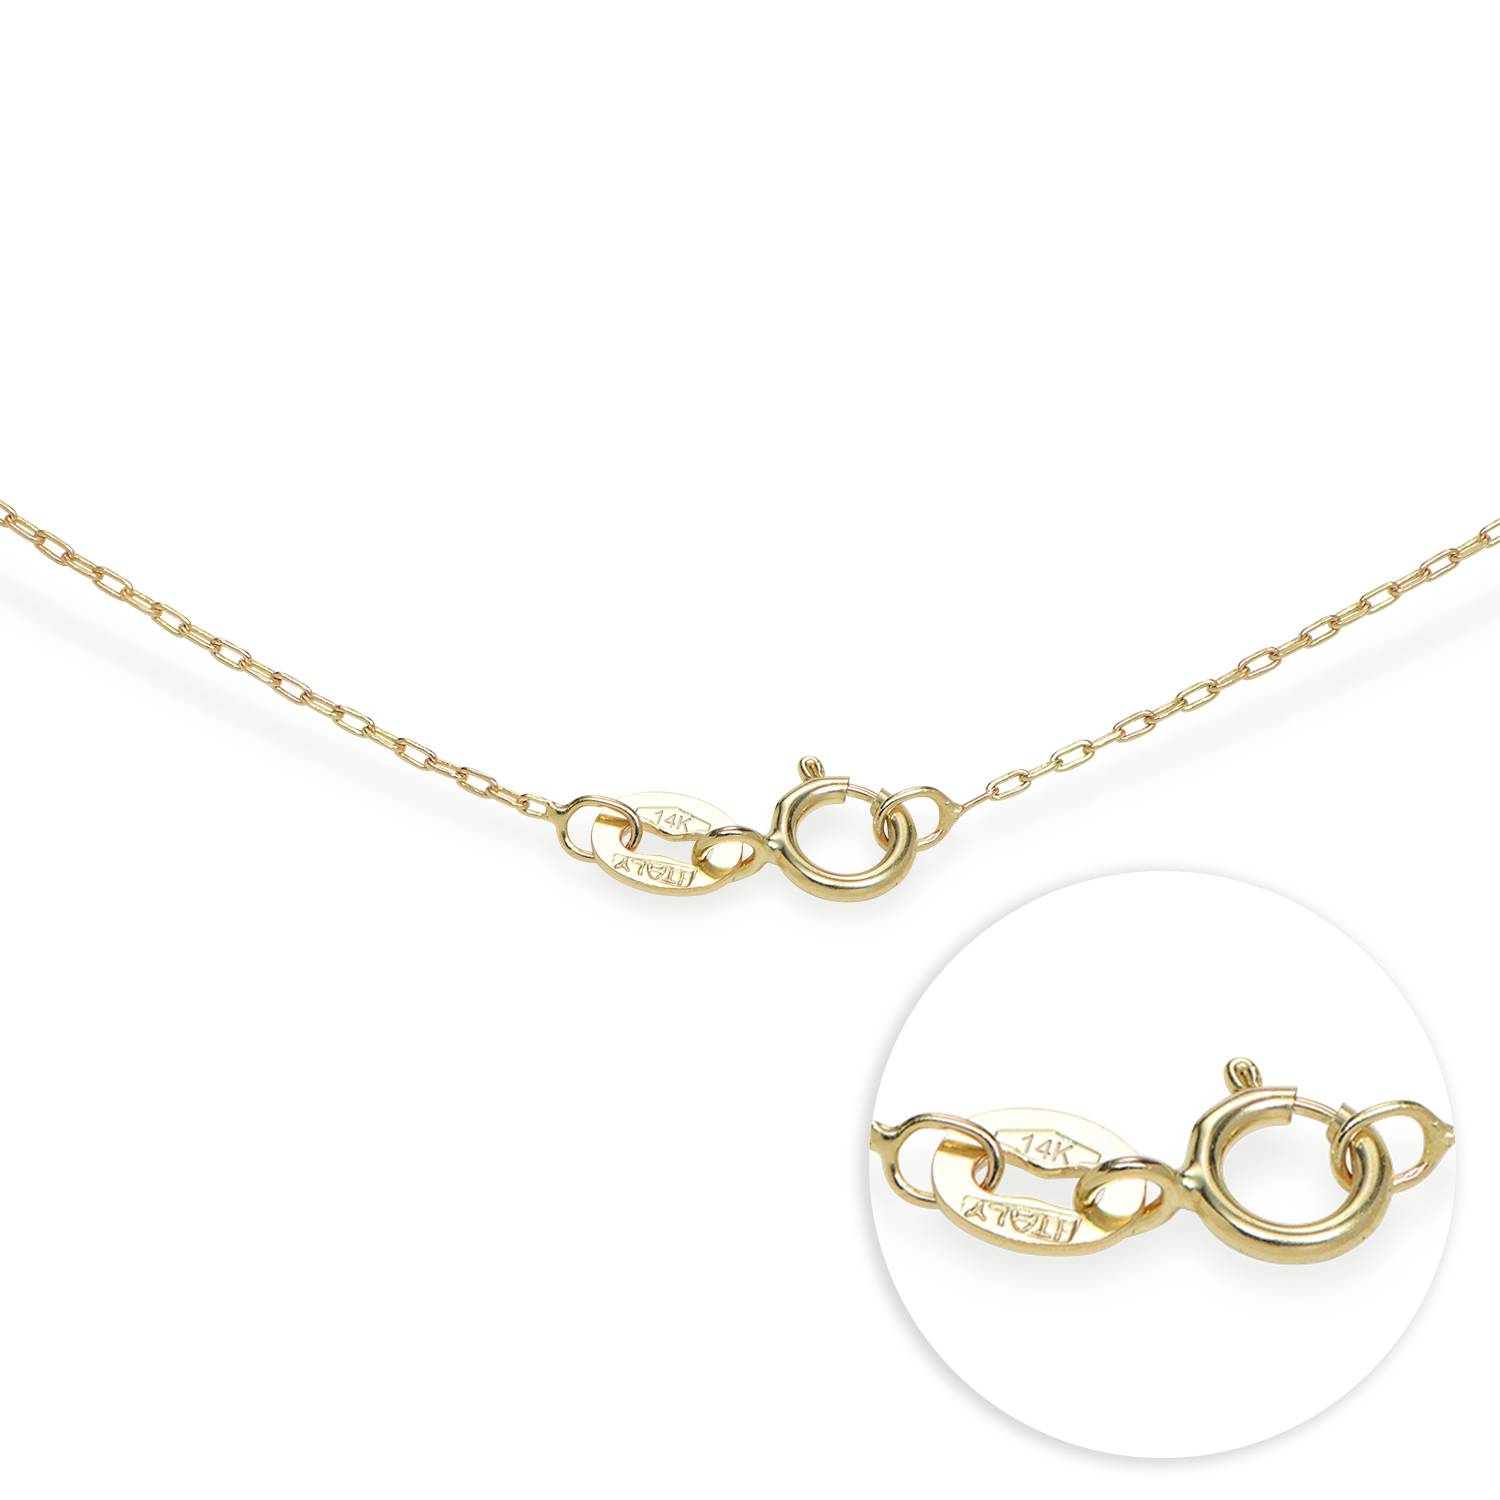 Herzförmige Halskette mit zwei Namen - 585er Gelbgold-2 Produktfoto